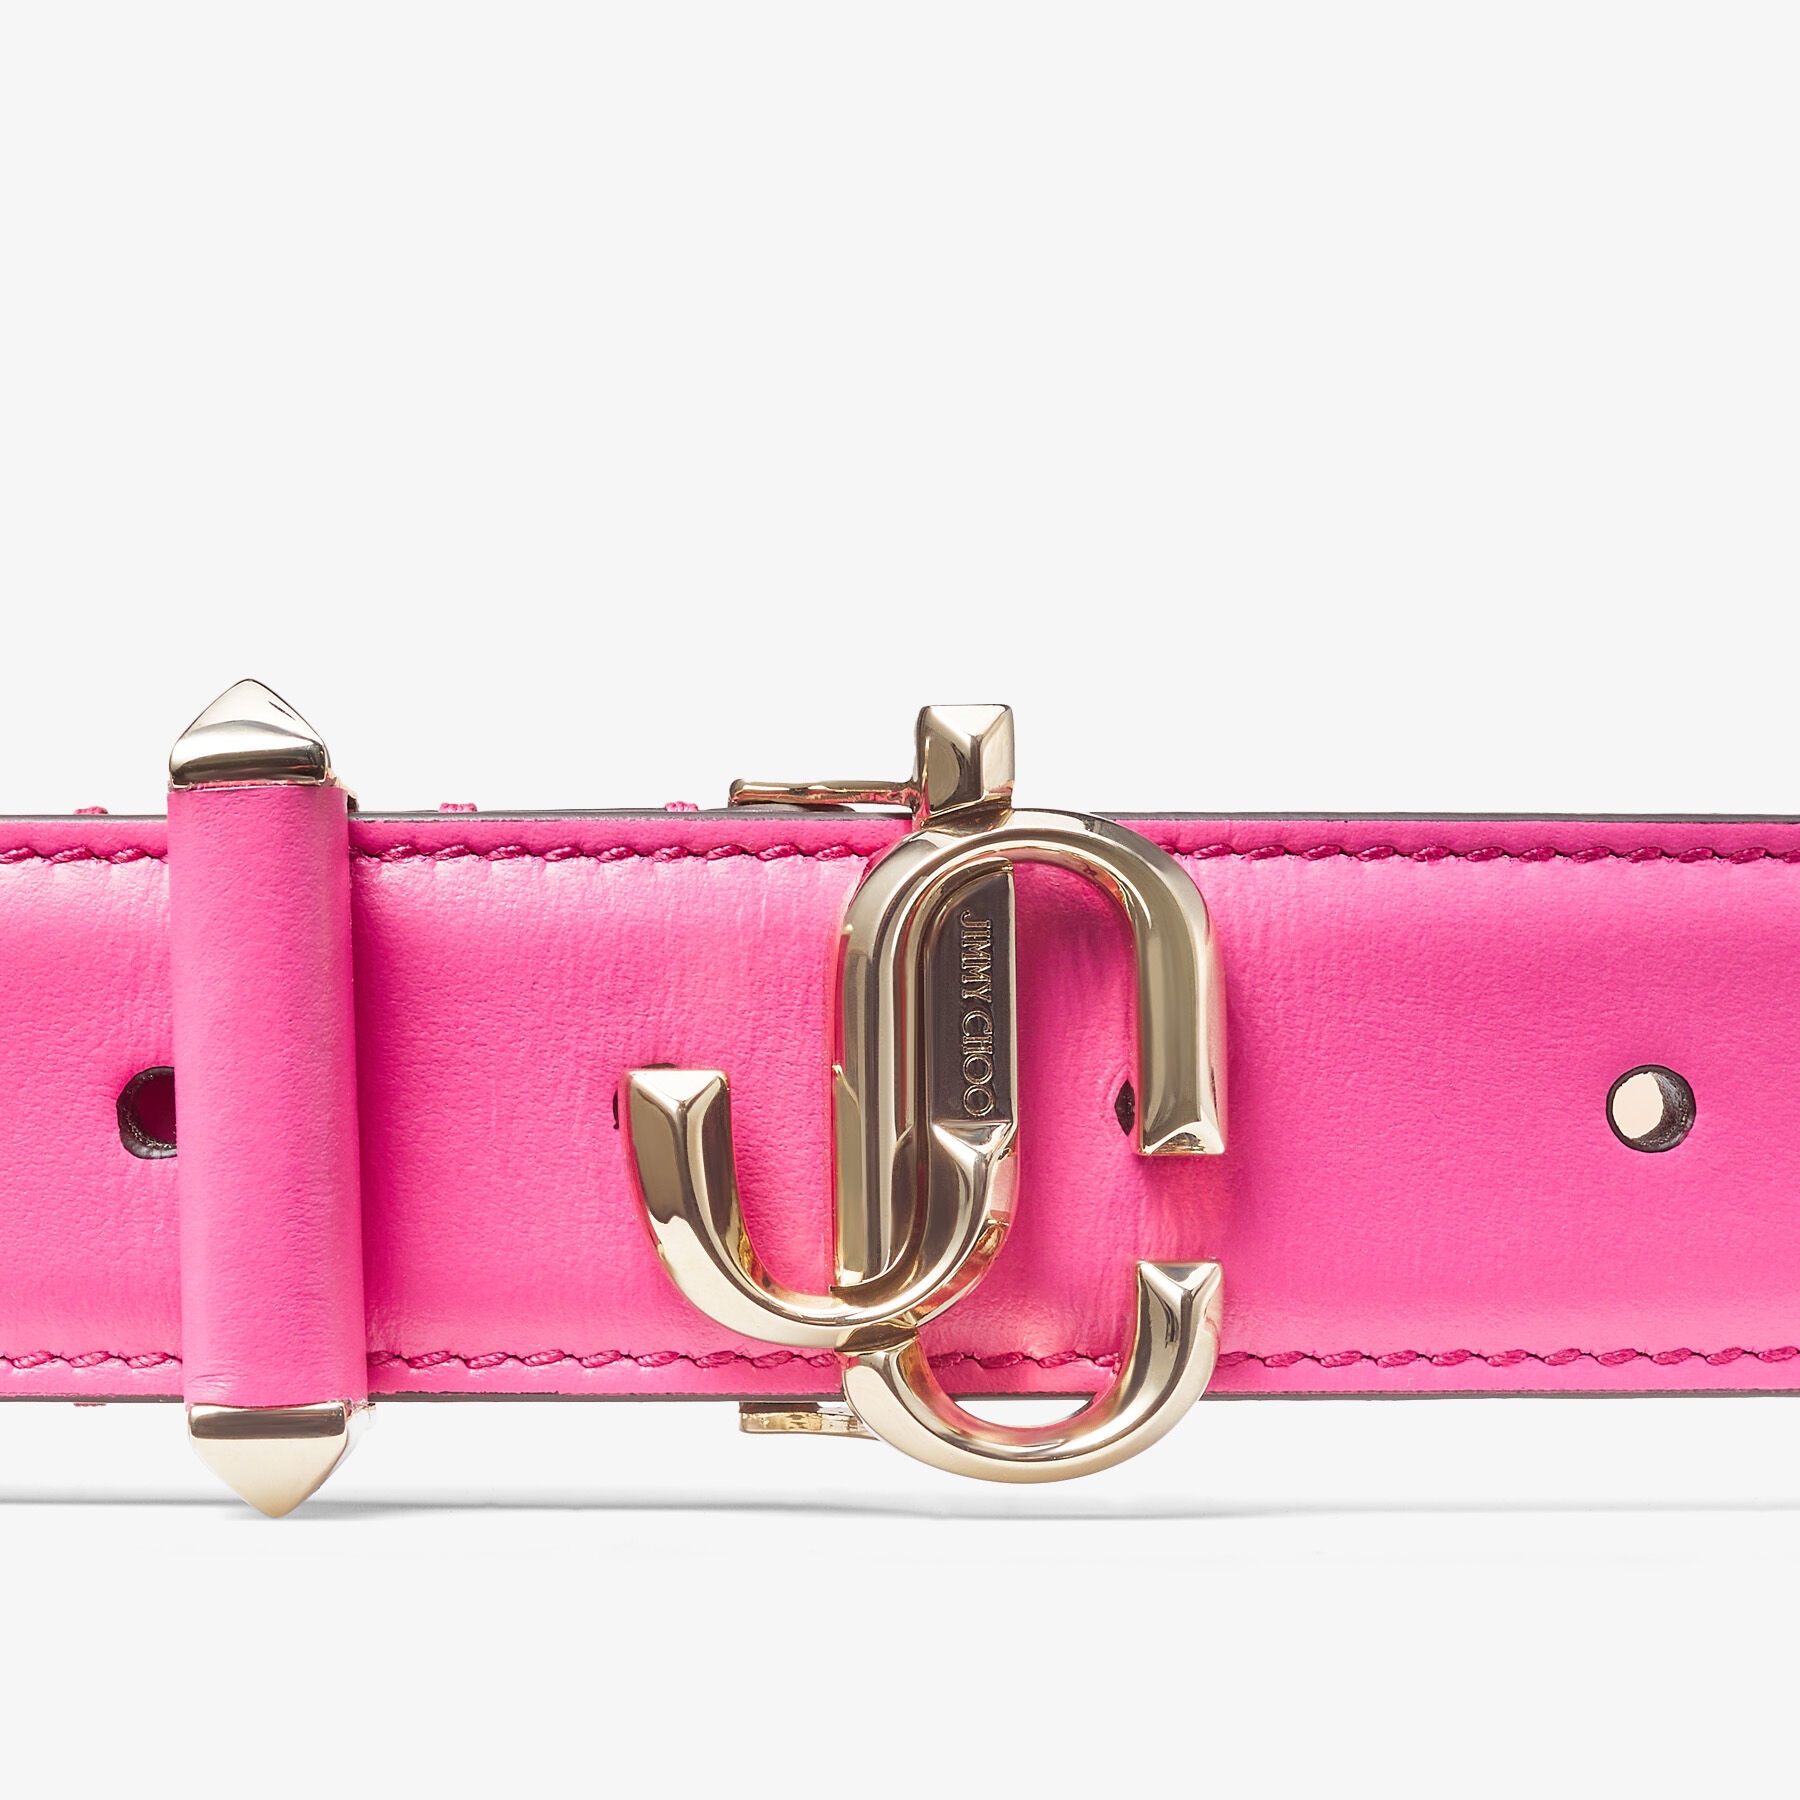 Jc-bar Blt
Candy Pink Calf Leather Bar Belt with JC Emblem - 2